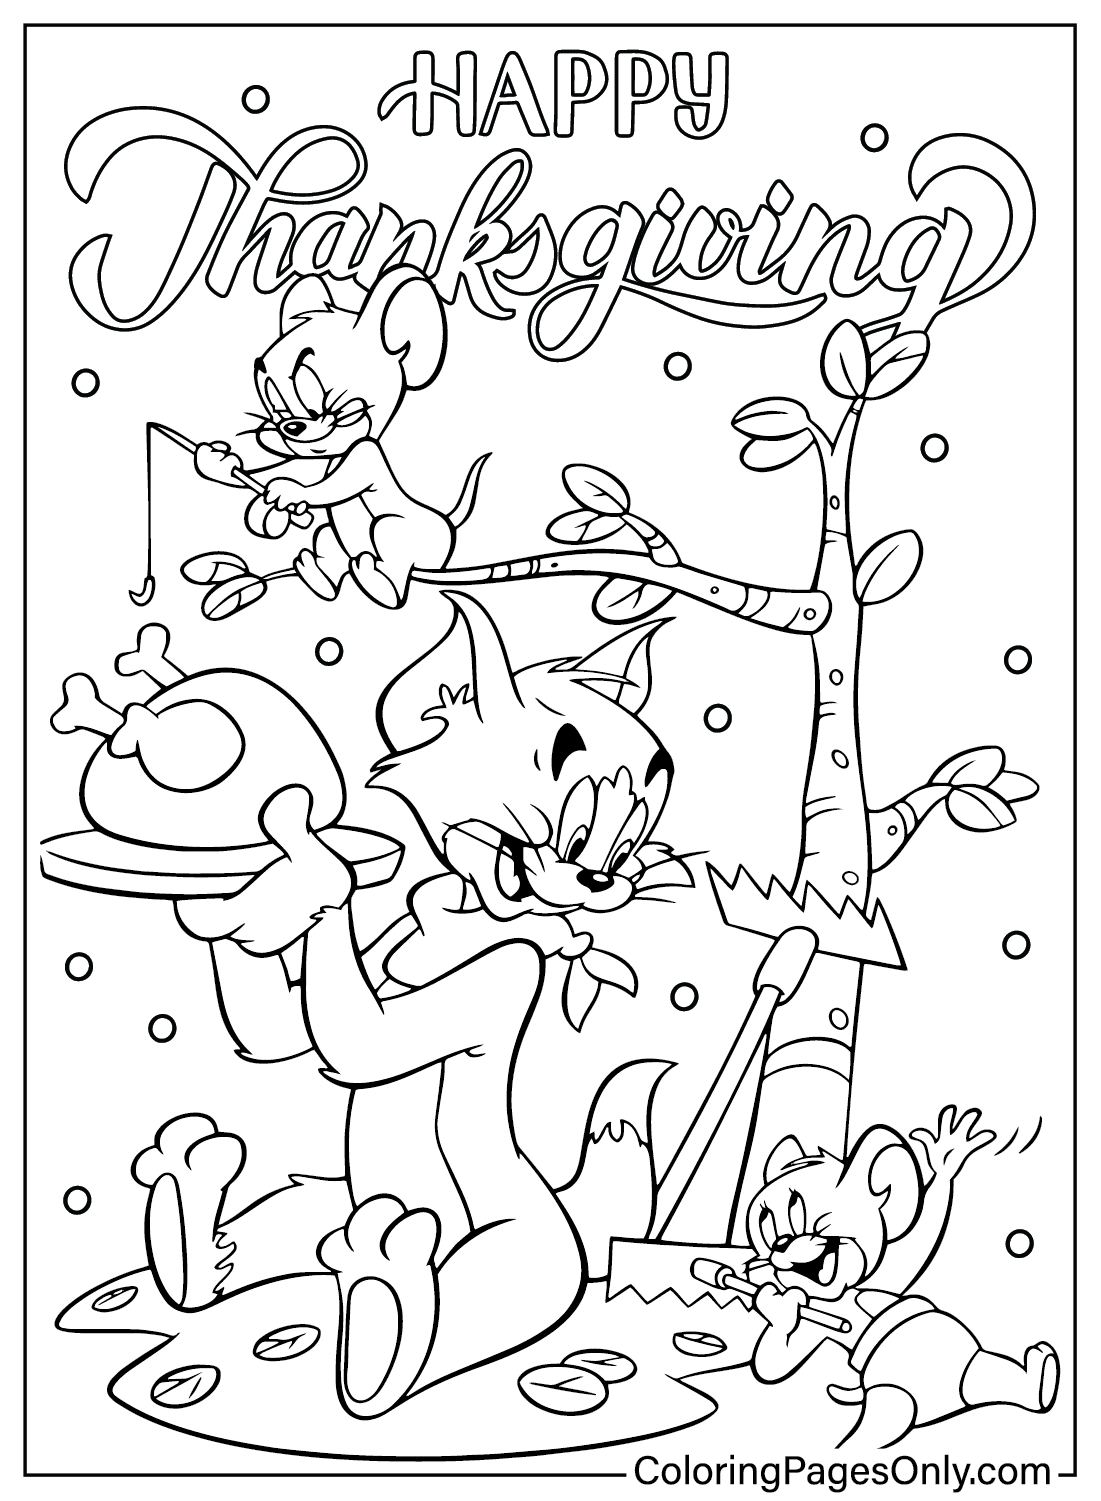 Página para colorear de Tom y Jerry de Acción de Gracias de Estoy agradecido por